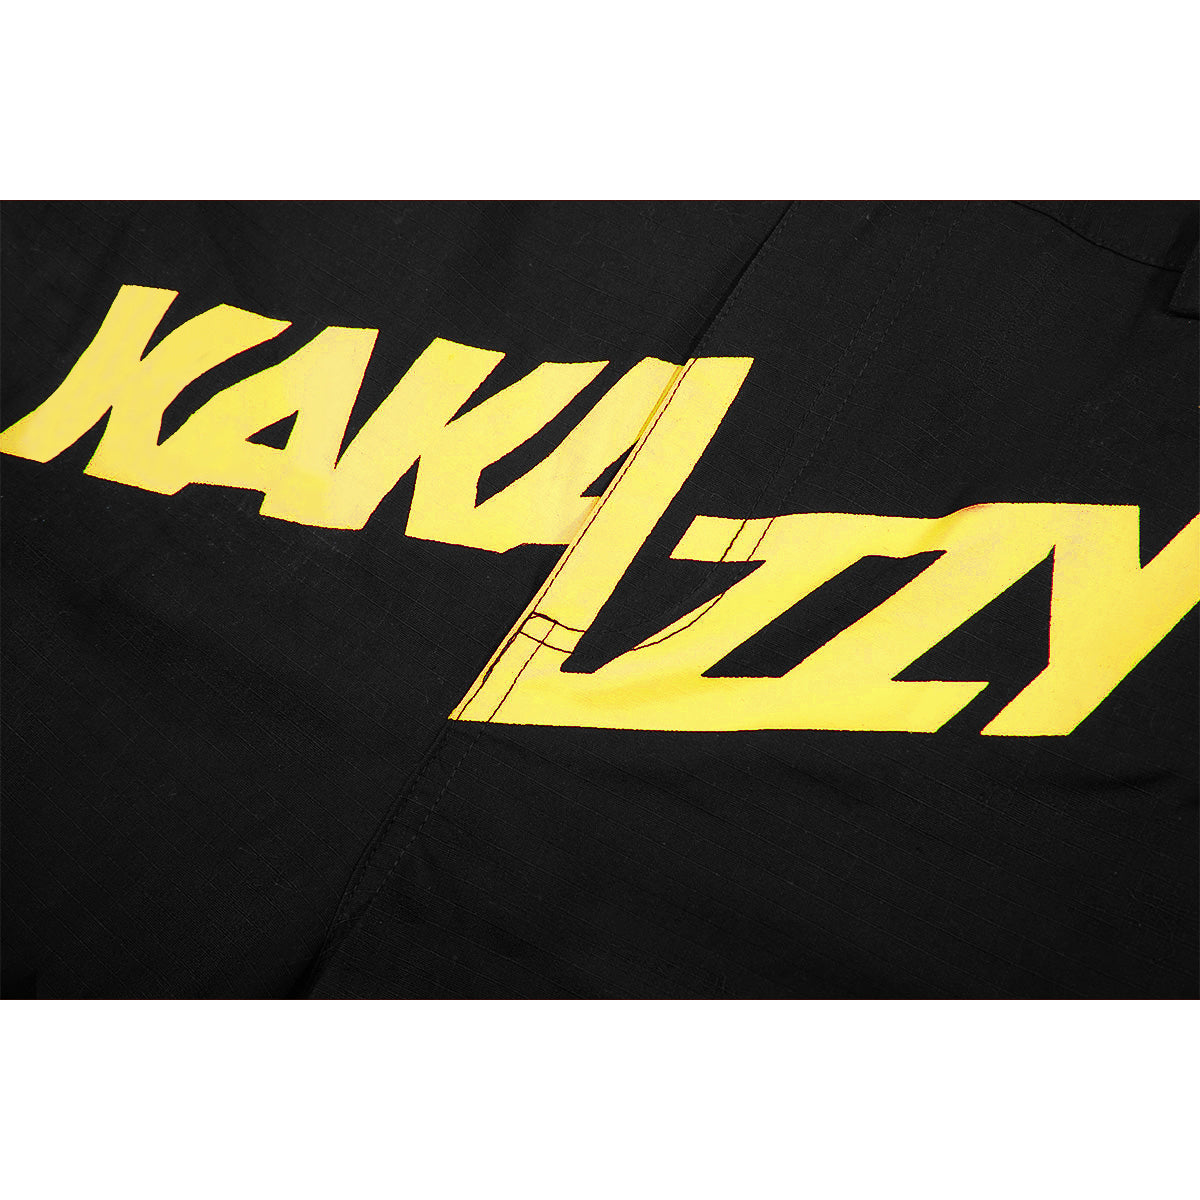 Kakazzy Cargos Black Yellow